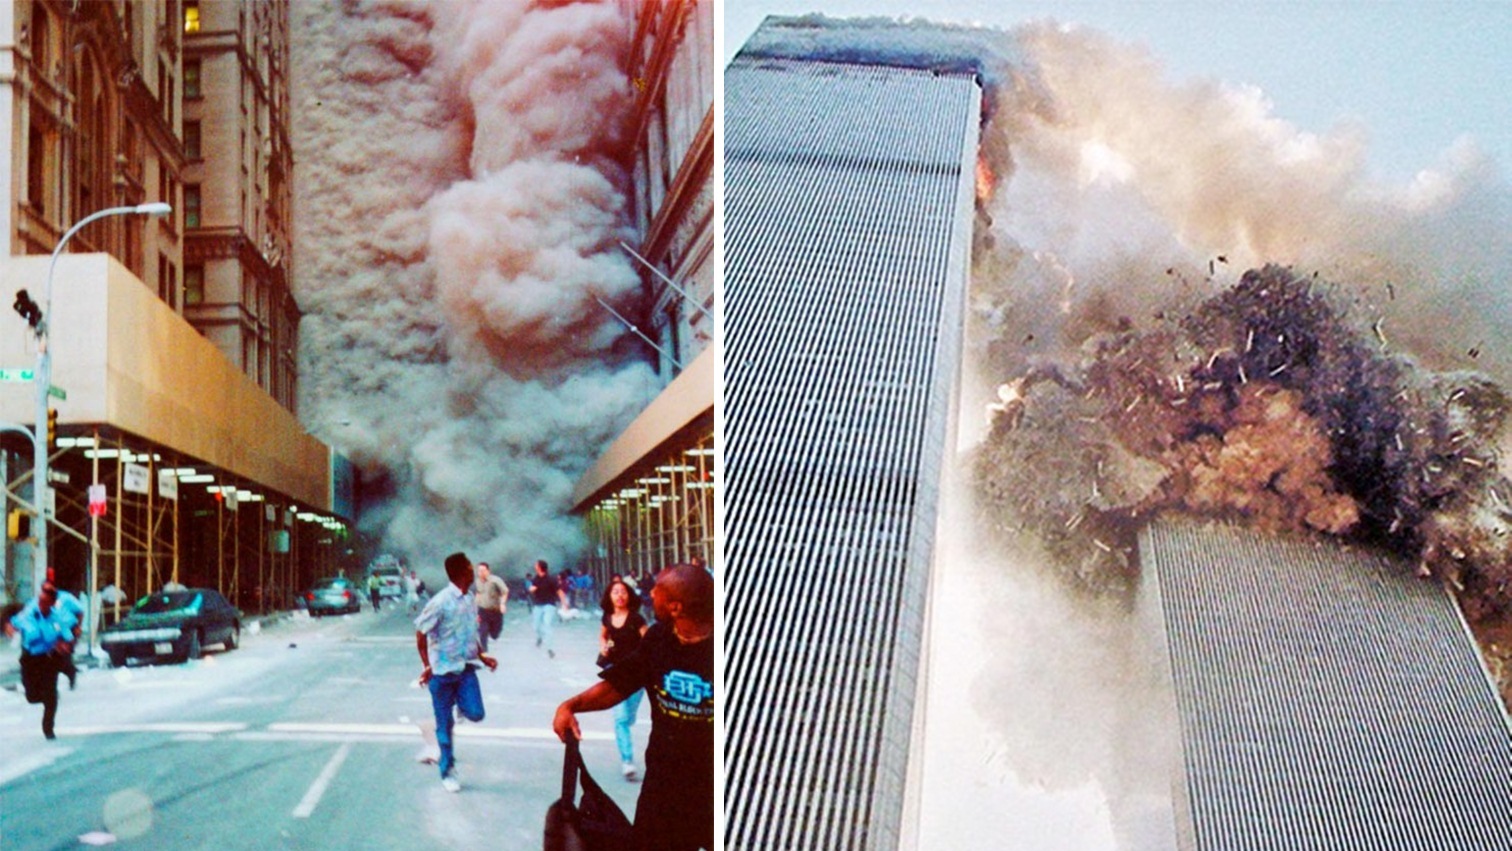 ร่วมรำลึกเหตุการณ์ 9/11 กับภาพเหตุการณ์วันมหาวิปโยคในมุมมองที่ไม่เคยเห็นมาก่อน!!